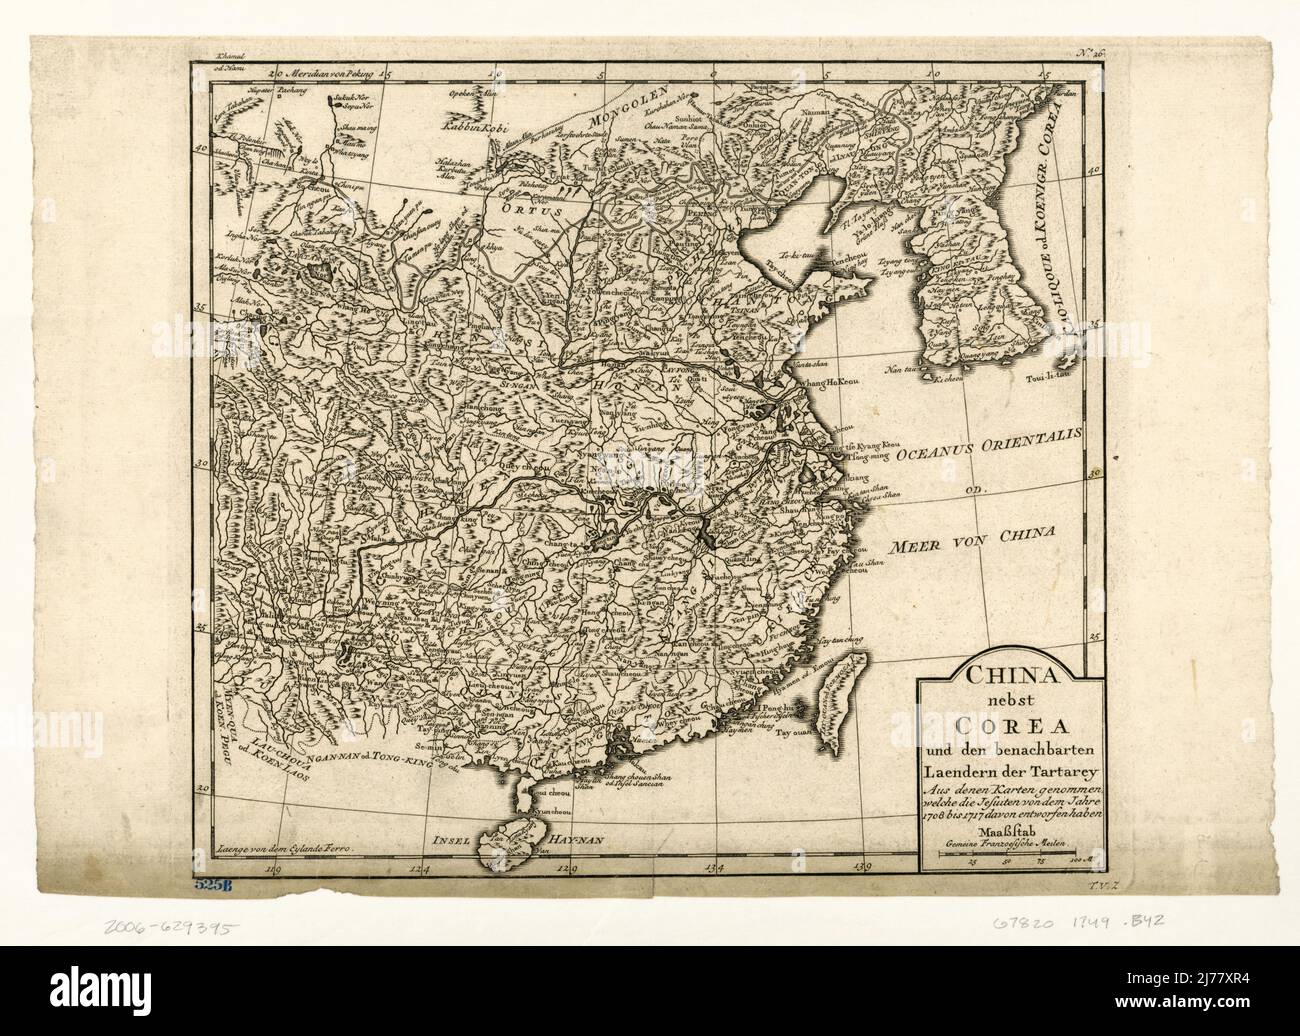 China nebst Corea und den benachbarten Laendern der Tartary aus denen Karten genommen, welche die Jesuiten von dem Jahre 1708 bis 1717 davon entworfen haben. LOC 2006629395 Stock Photo